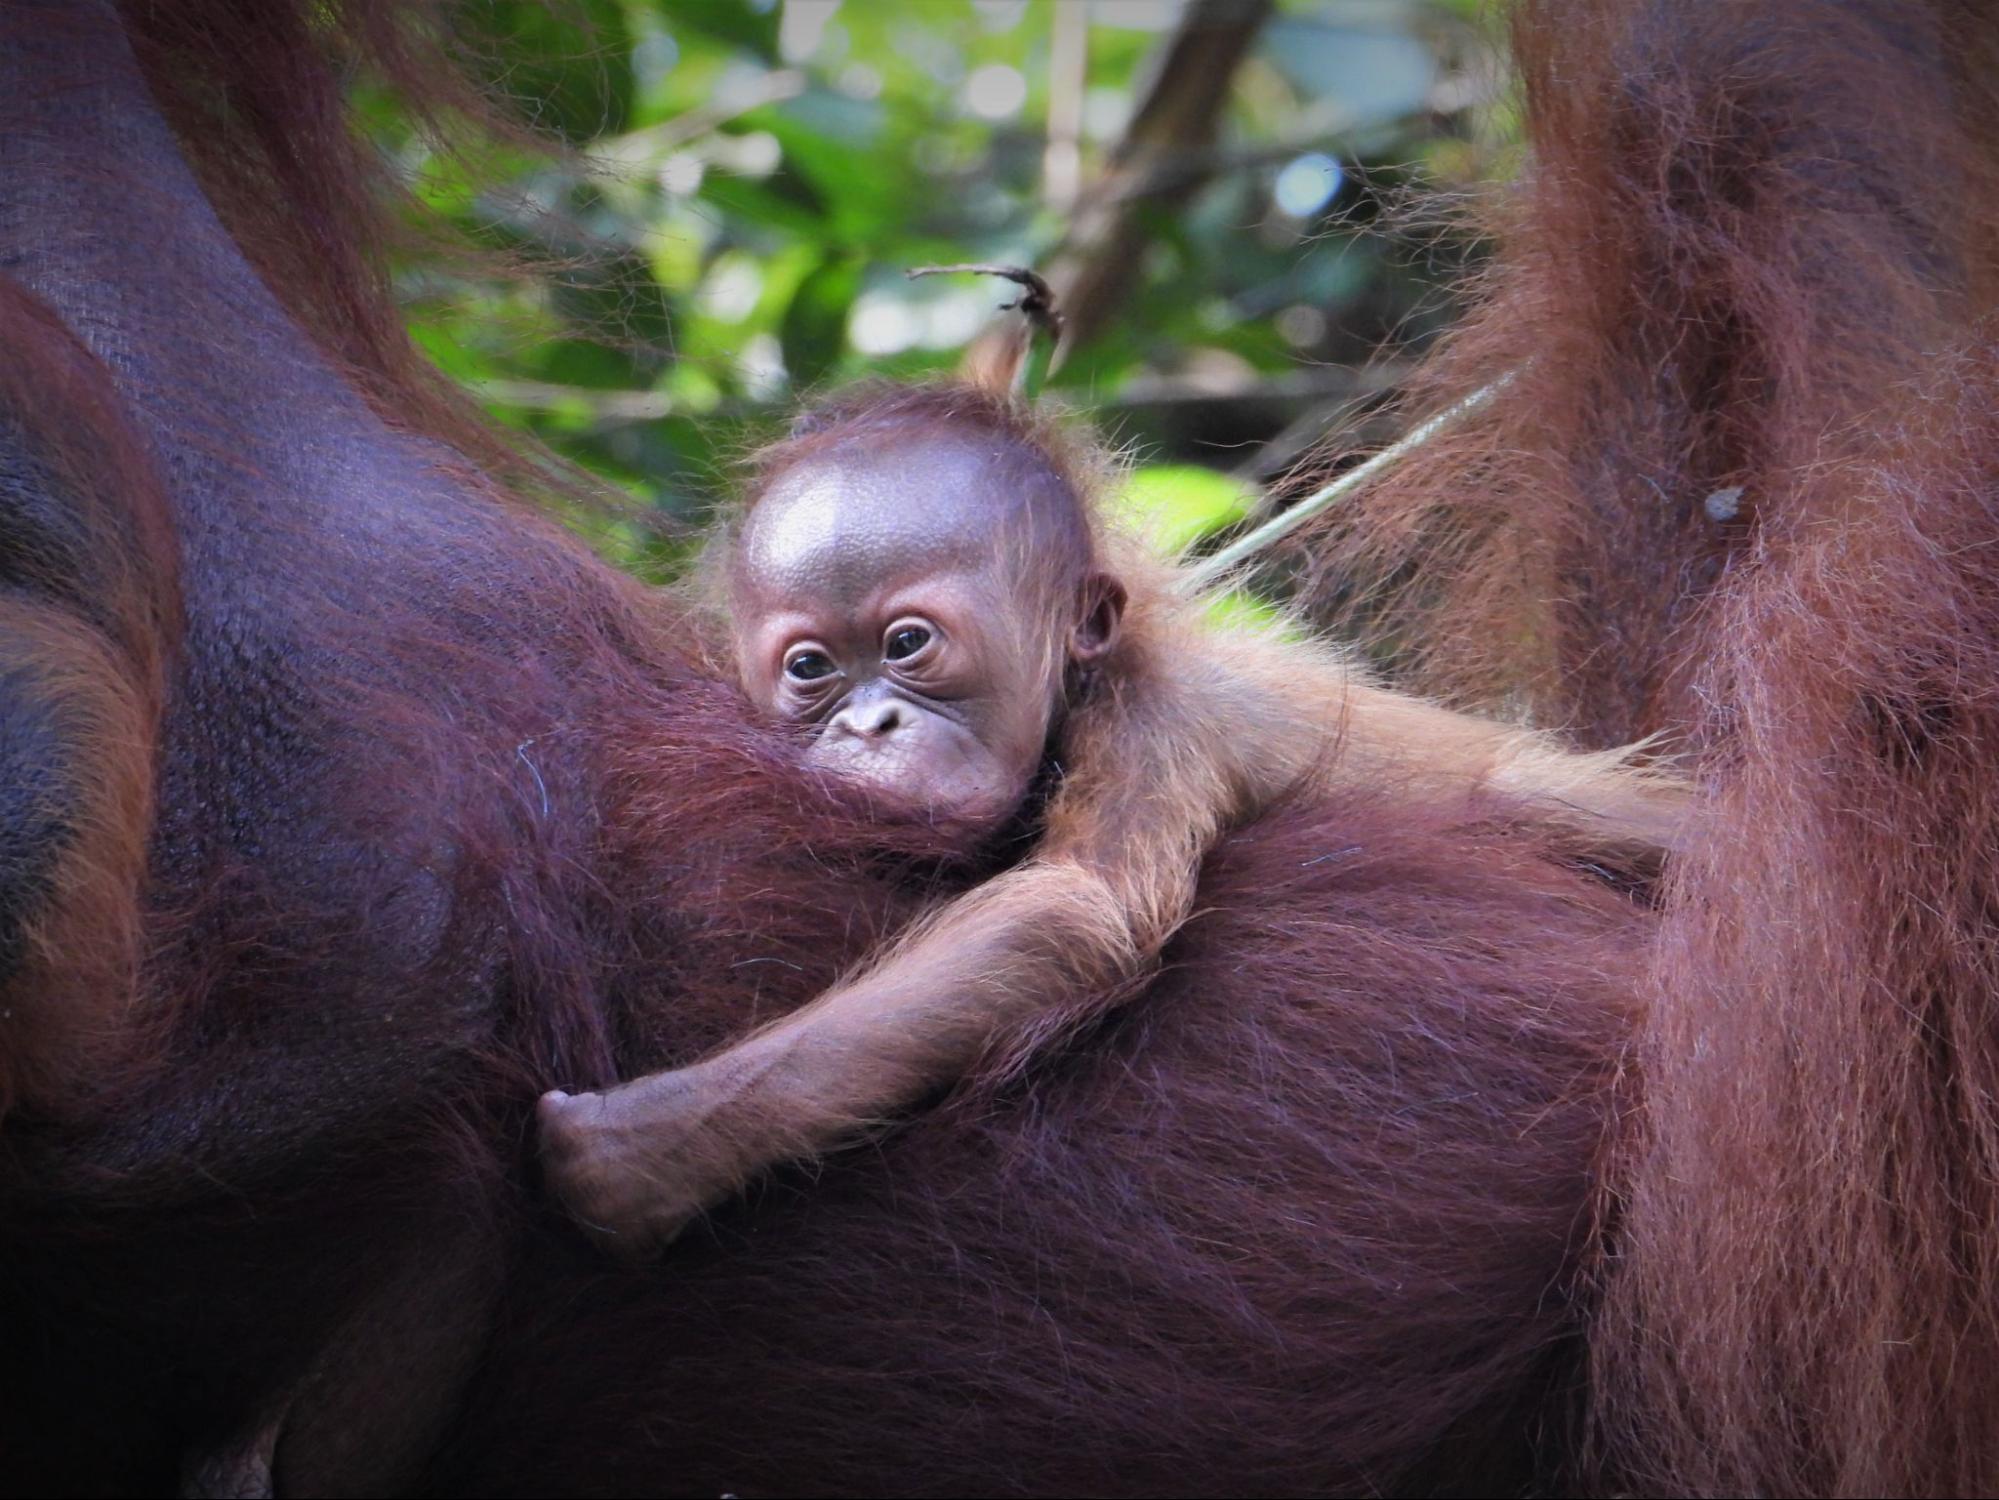 ooooha baby orangutan